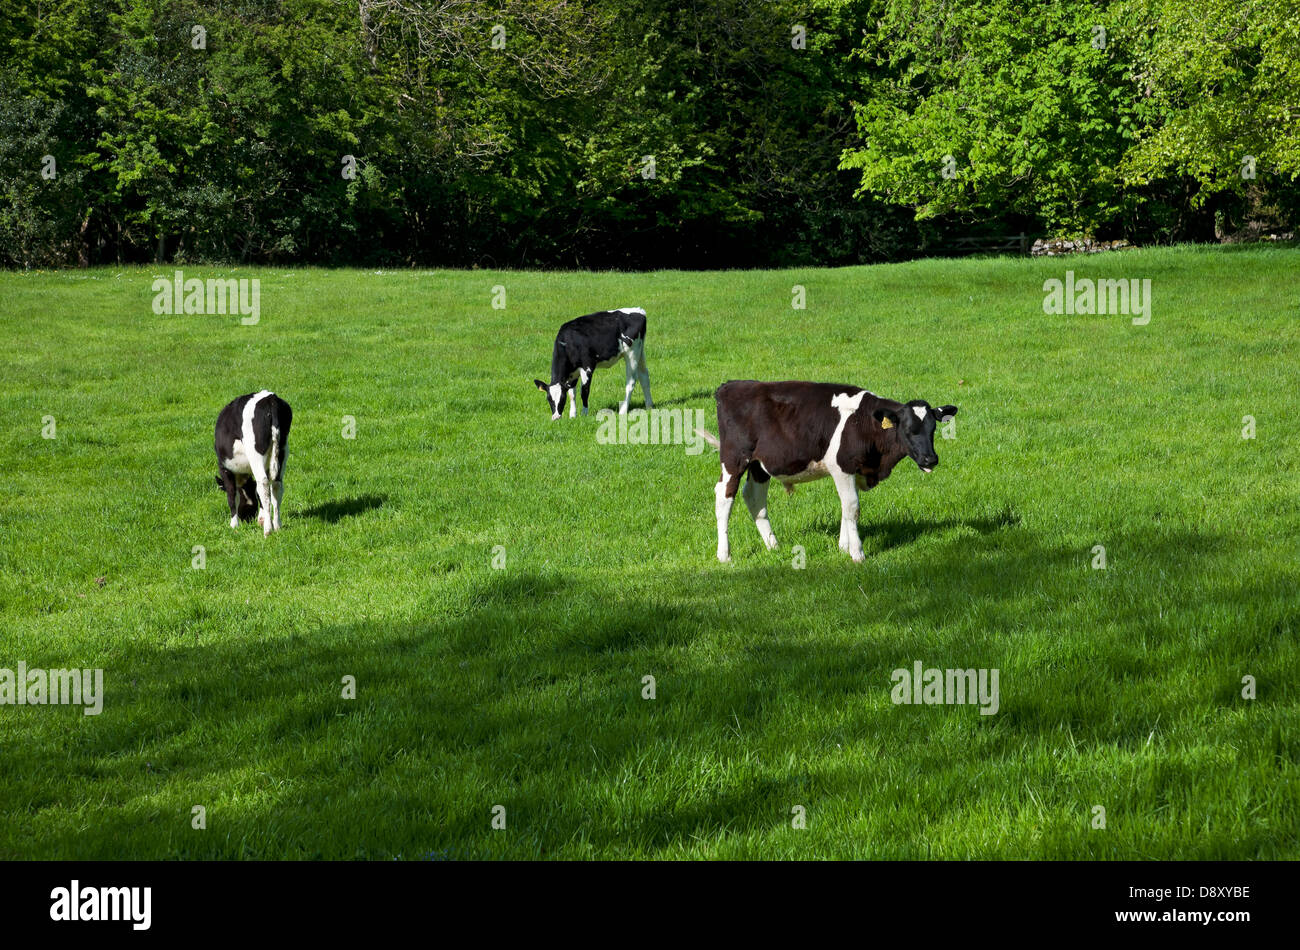 Vitelli giovani vacche vitelli bovini da vitello che pascolano in un prato verde in primavera Lancashire Inghilterra Regno Unito Gran Bretagna Foto Stock